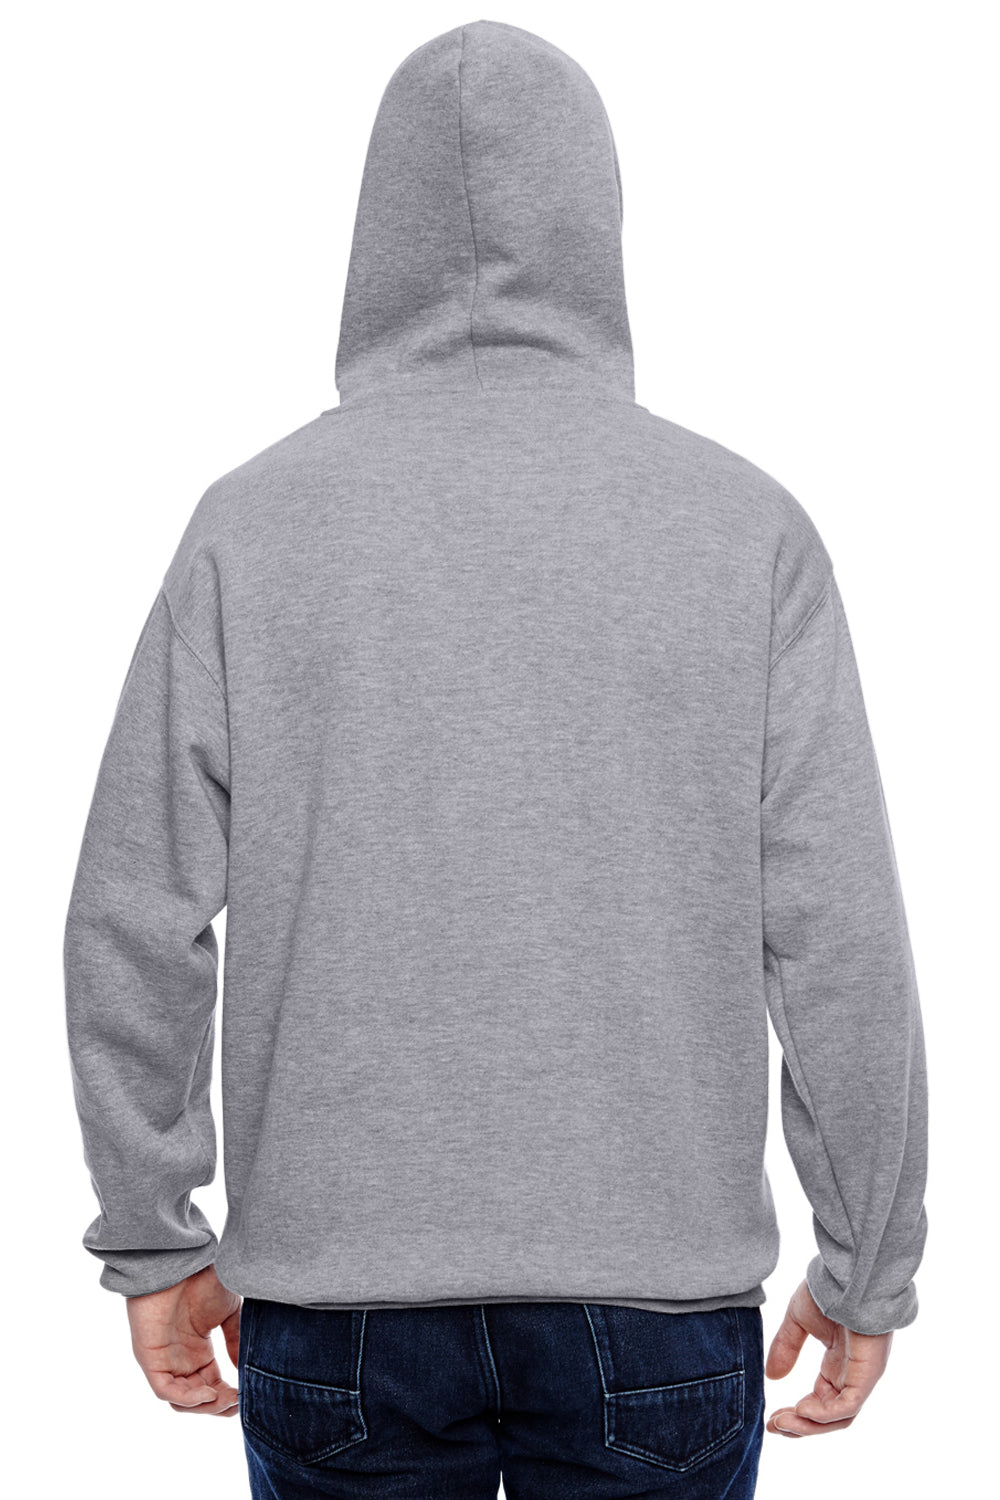 J America JA8815 Mens Tailgate Fleece Hooded Sweatshirt Hoodie Oxford Grey Back